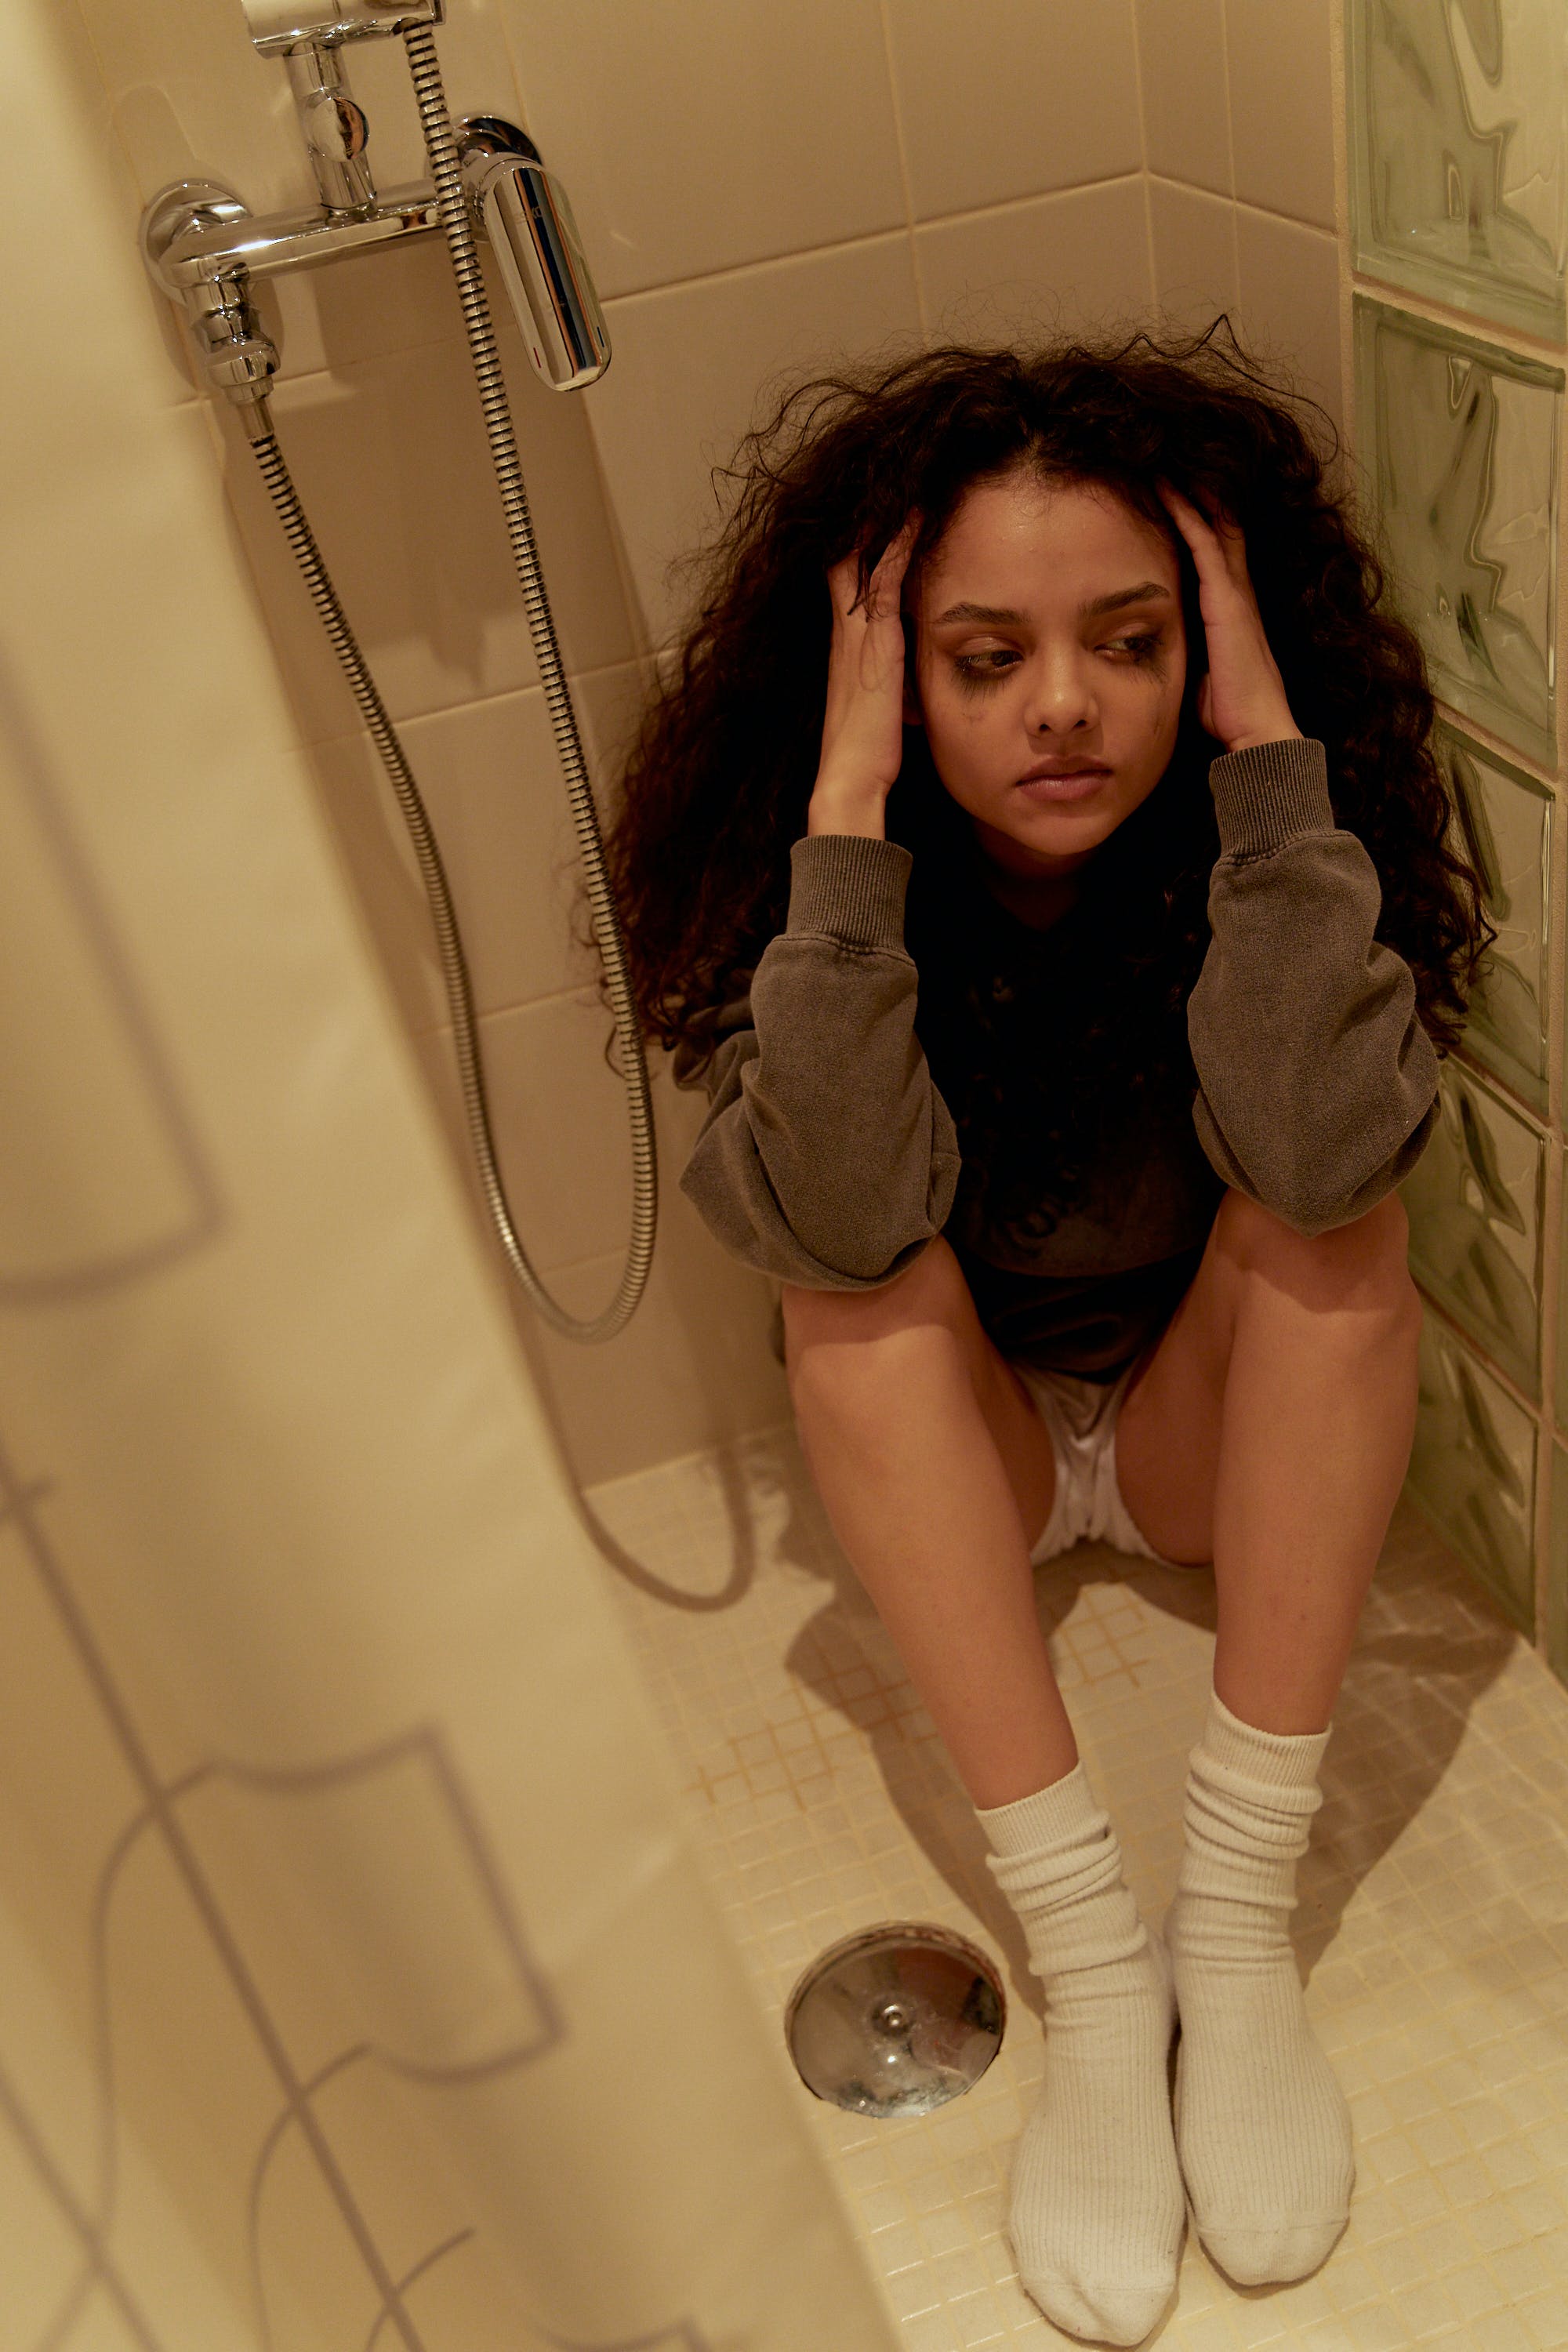 Eine aufgebrachte junge Frau, die weinend auf dem Boden einer Dusche sitzt | Quelle: Pexels